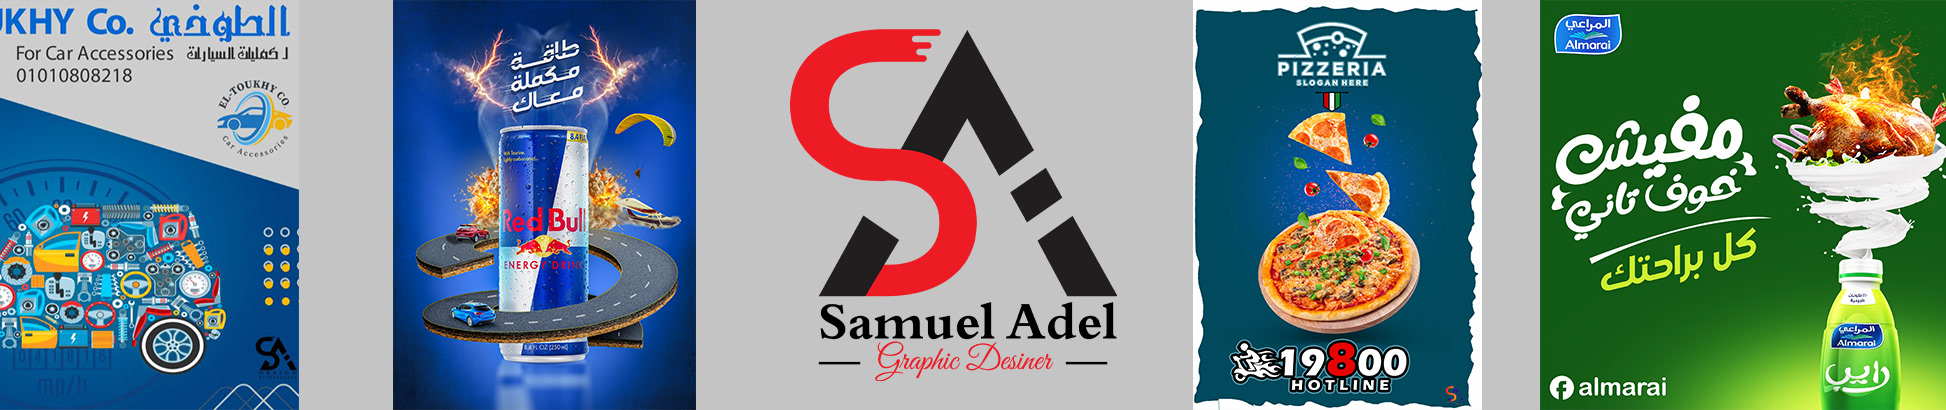 Samuel Adel's profile banner